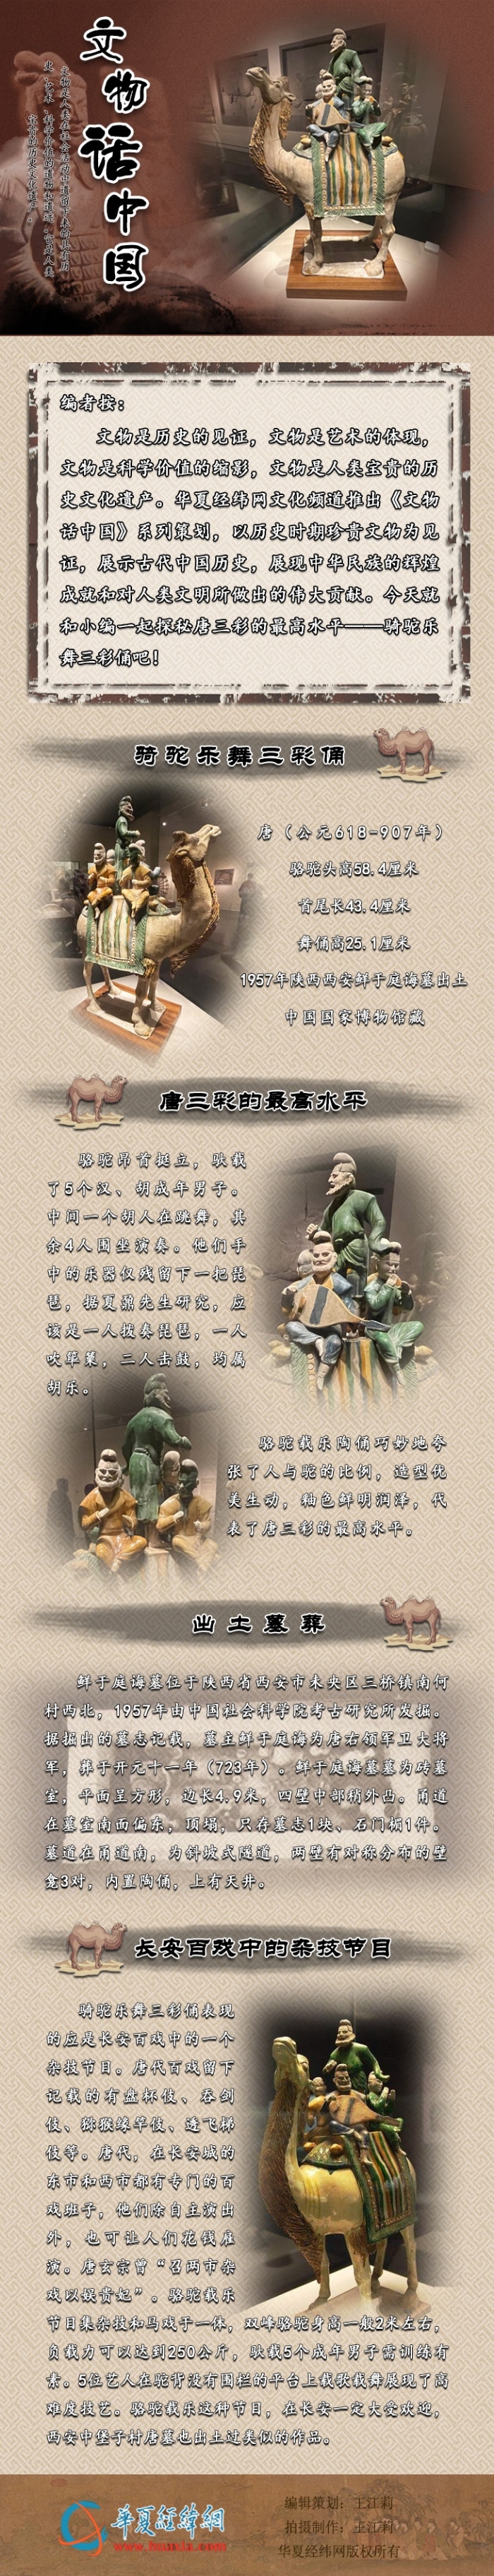 文物话中国——三彩釉陶骆驼载乐俑